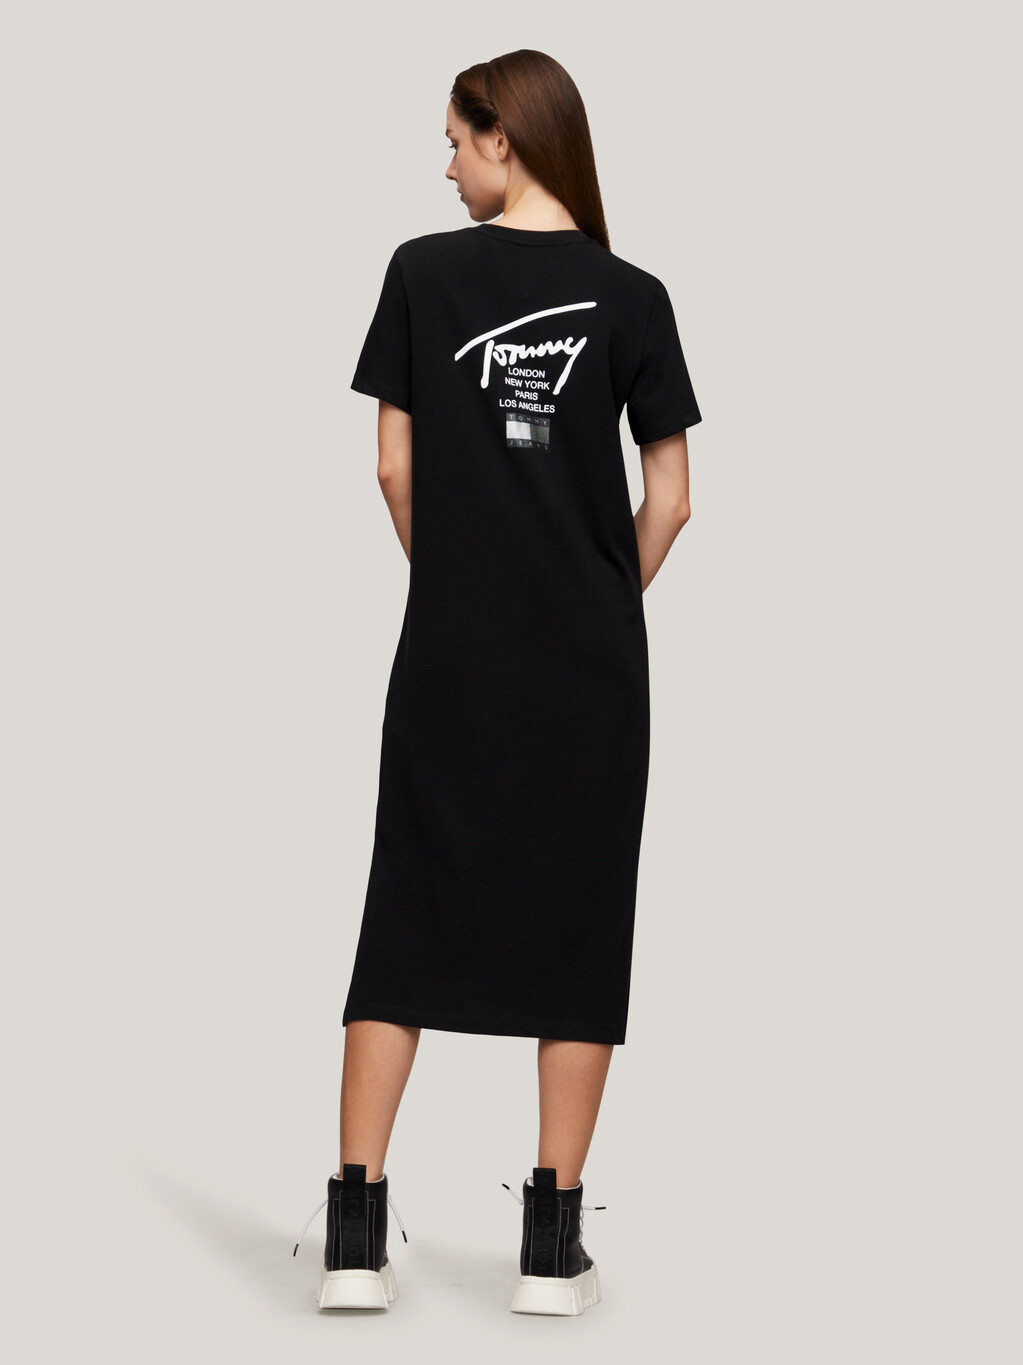 現代標誌 T 恤連身裙, Black, hi-res